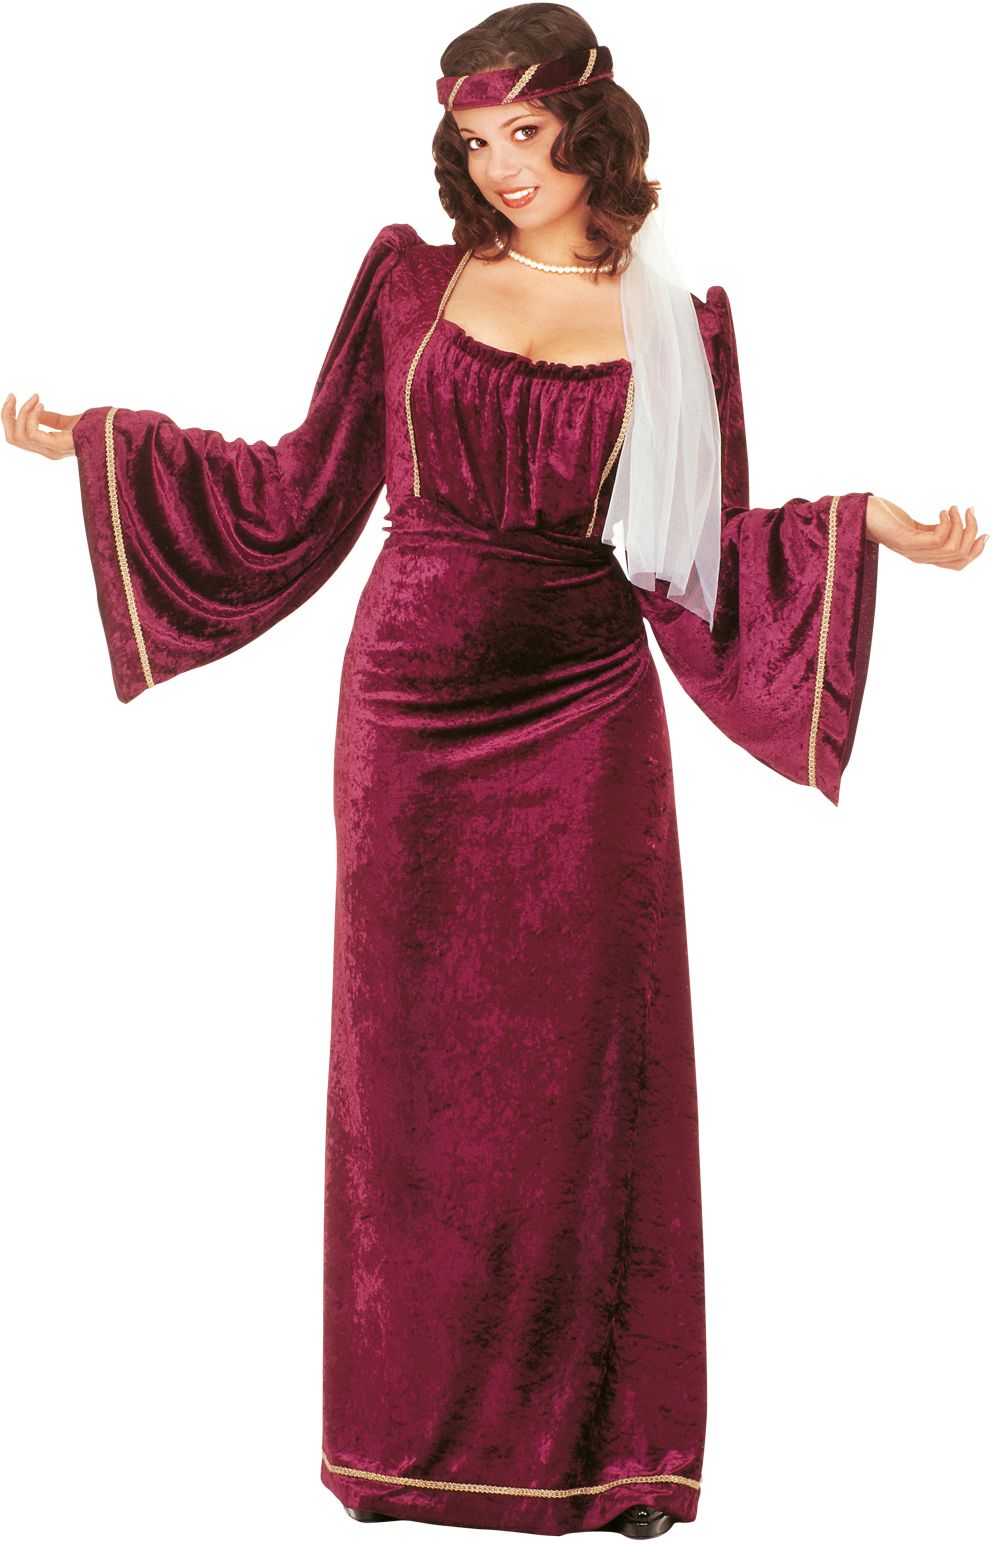 Middeleeuwse dame kostuum